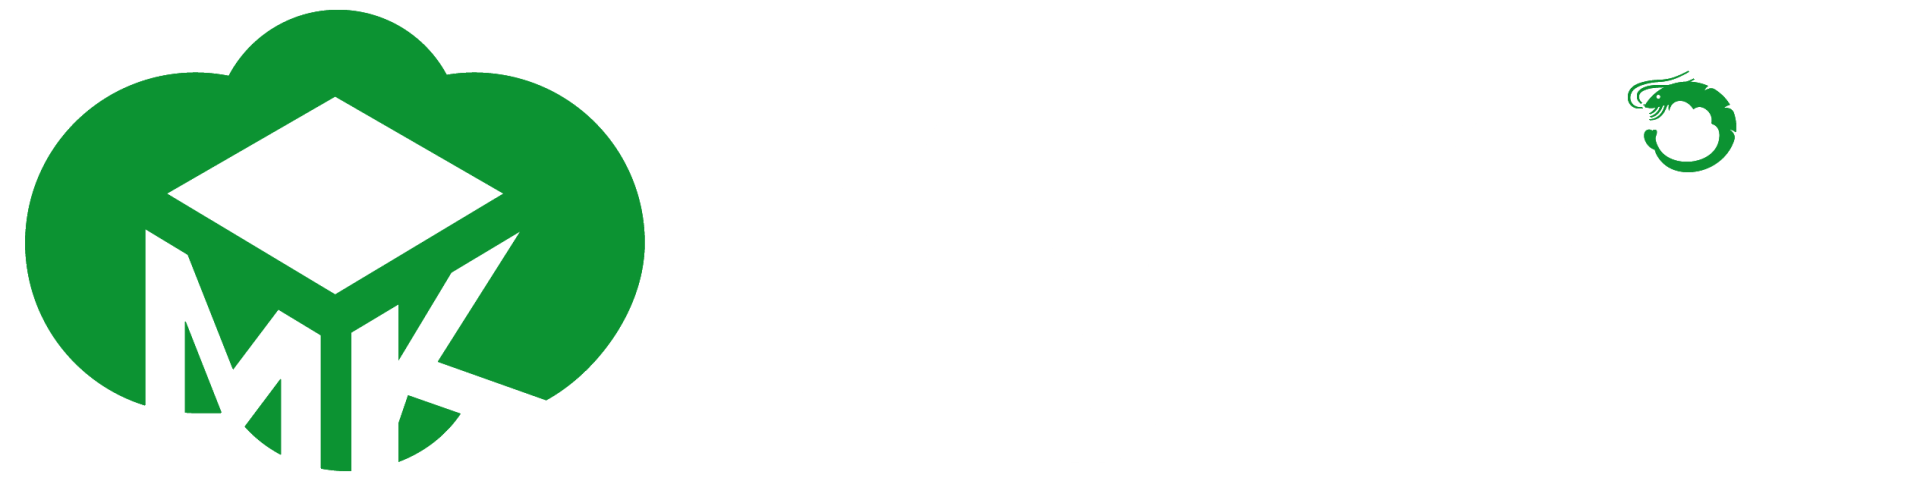 Mykrill logo